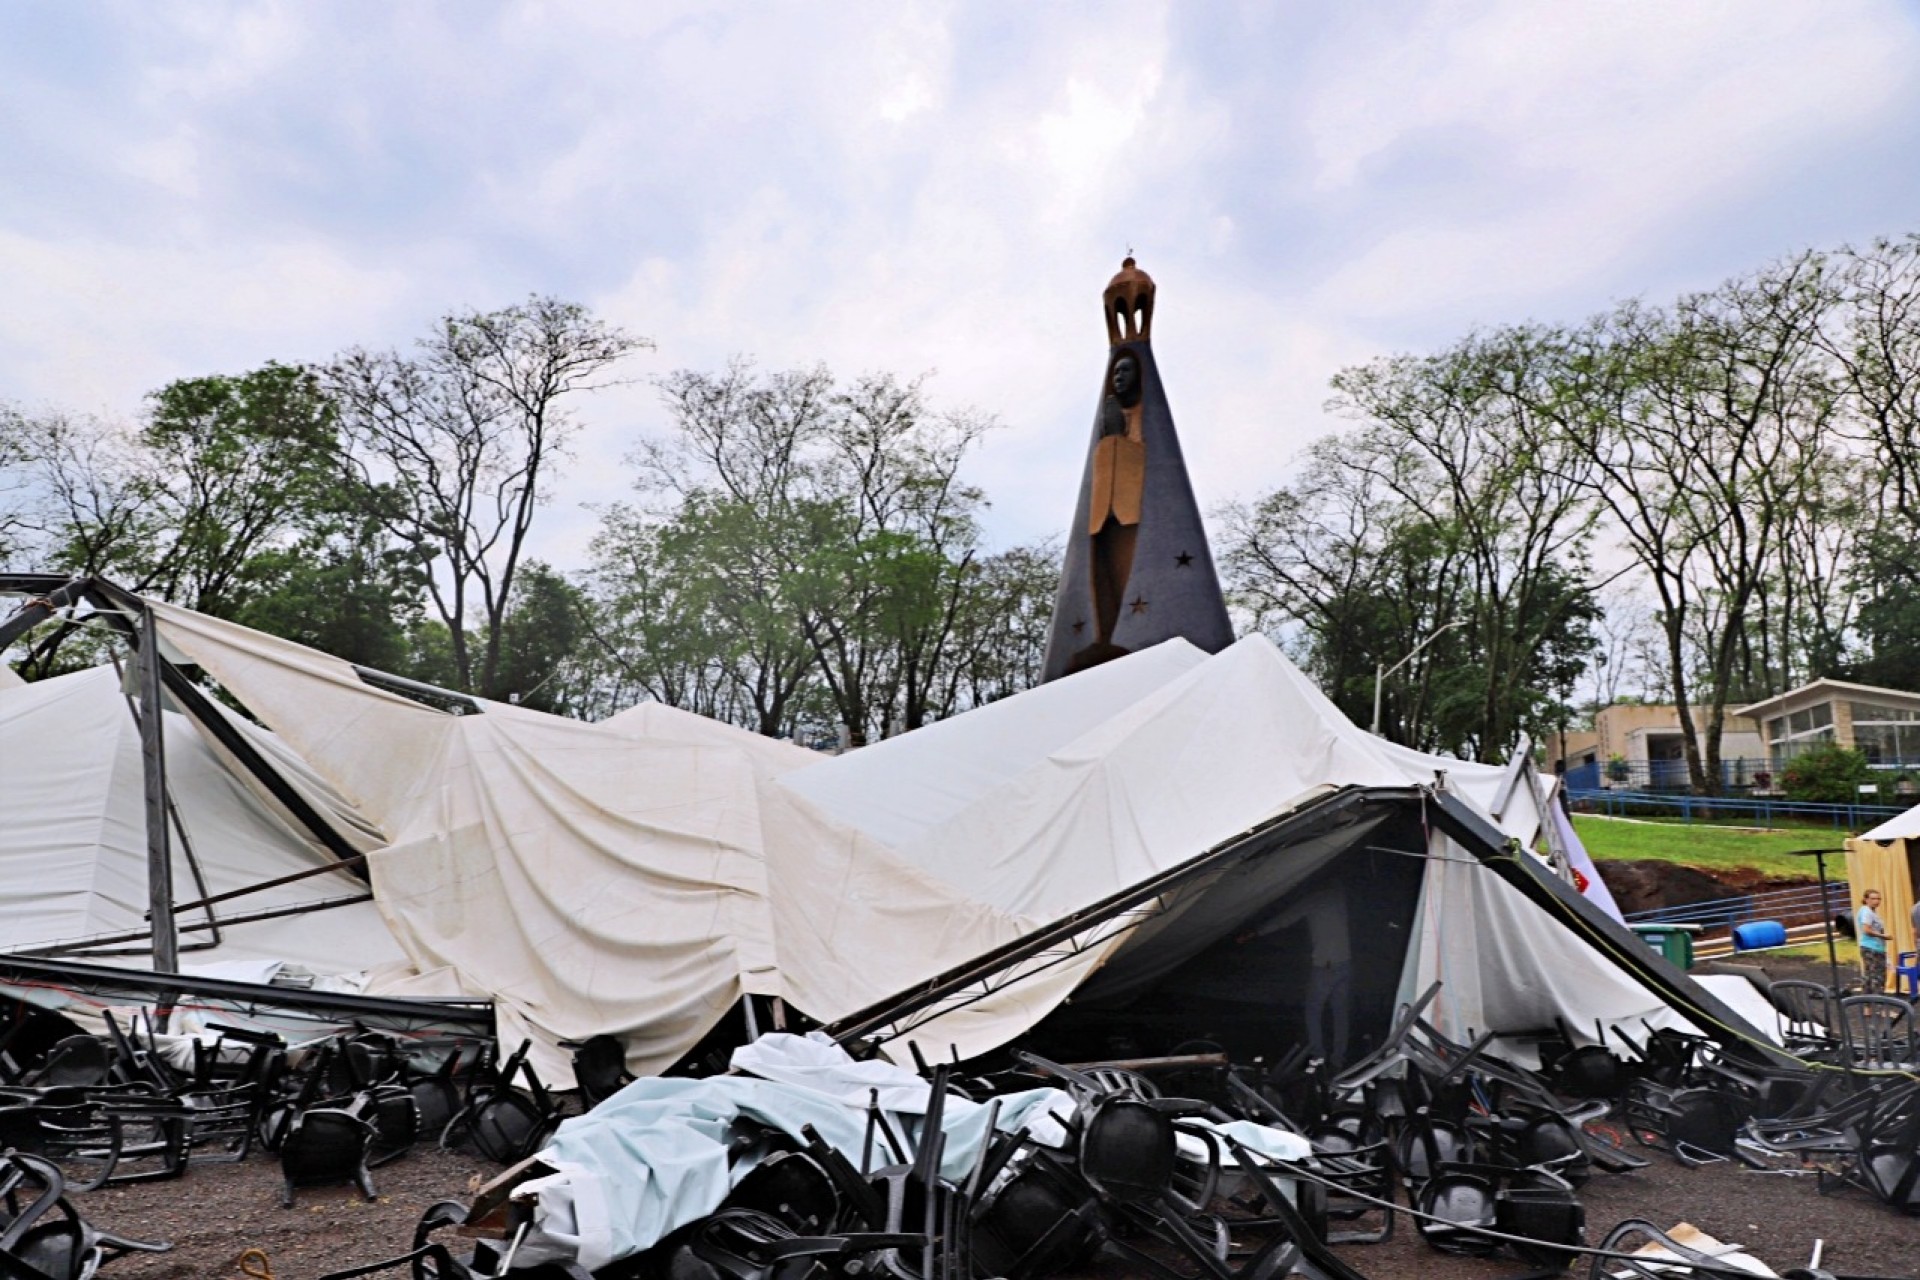 Ventos de 60 km/h danificam estruturas no Monumento Nossa Senhora Aparecida